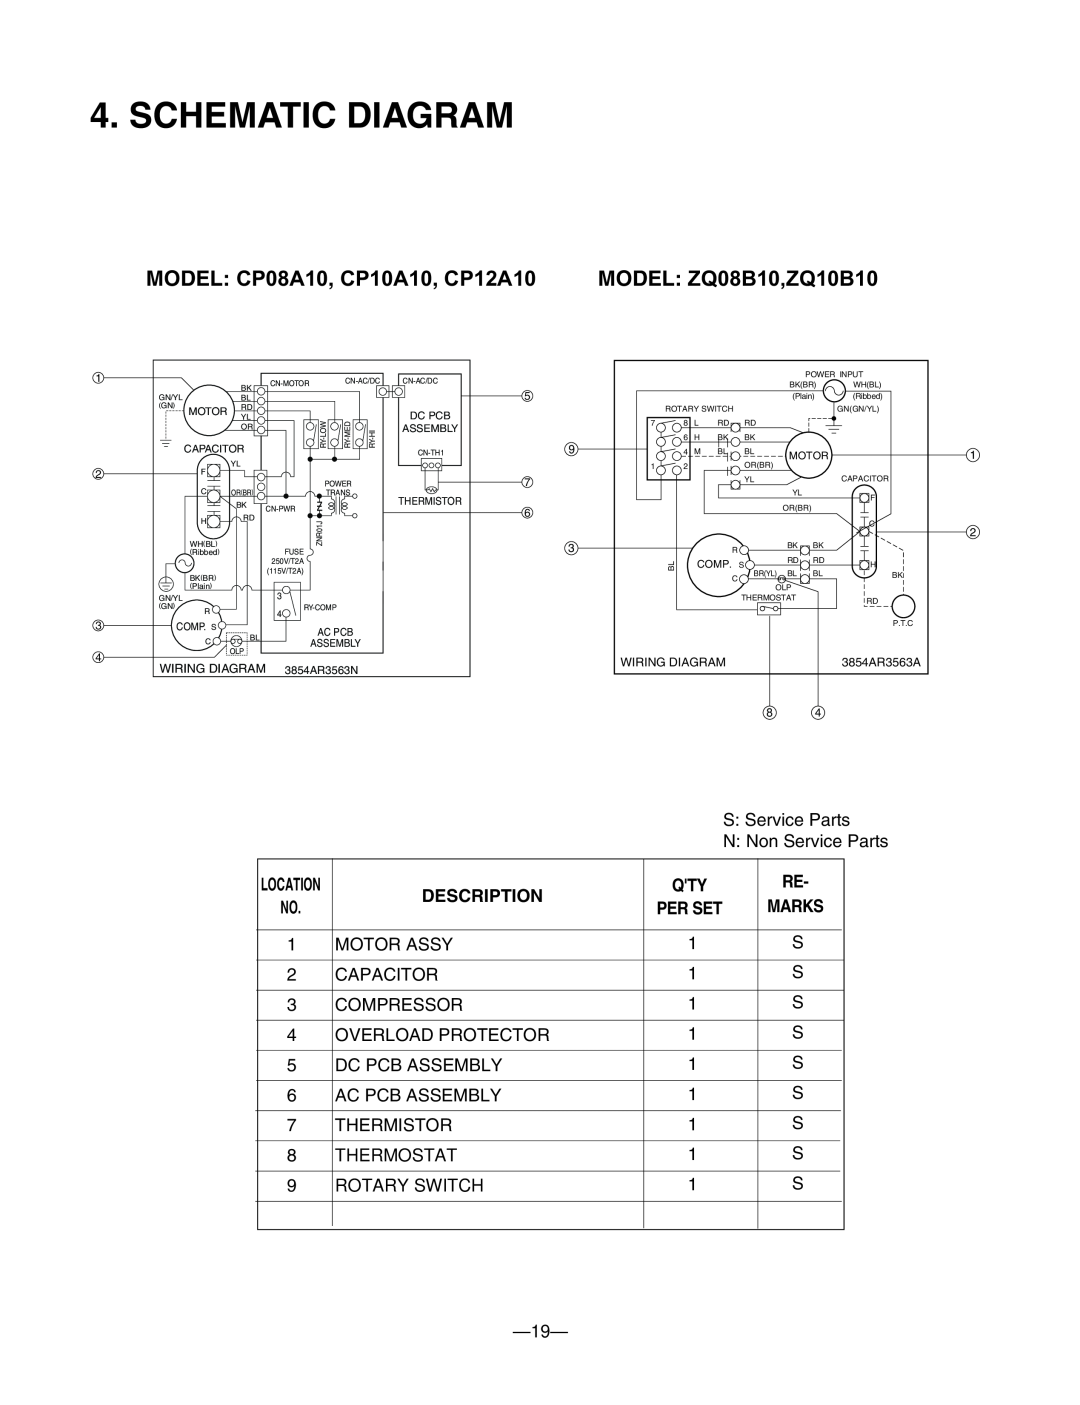 Friedrich manual Schematic Diagram, Description, MODEL ZQ08B10,ZQ10B10, MODEL CP08A10, CP10A10, CP12A10 